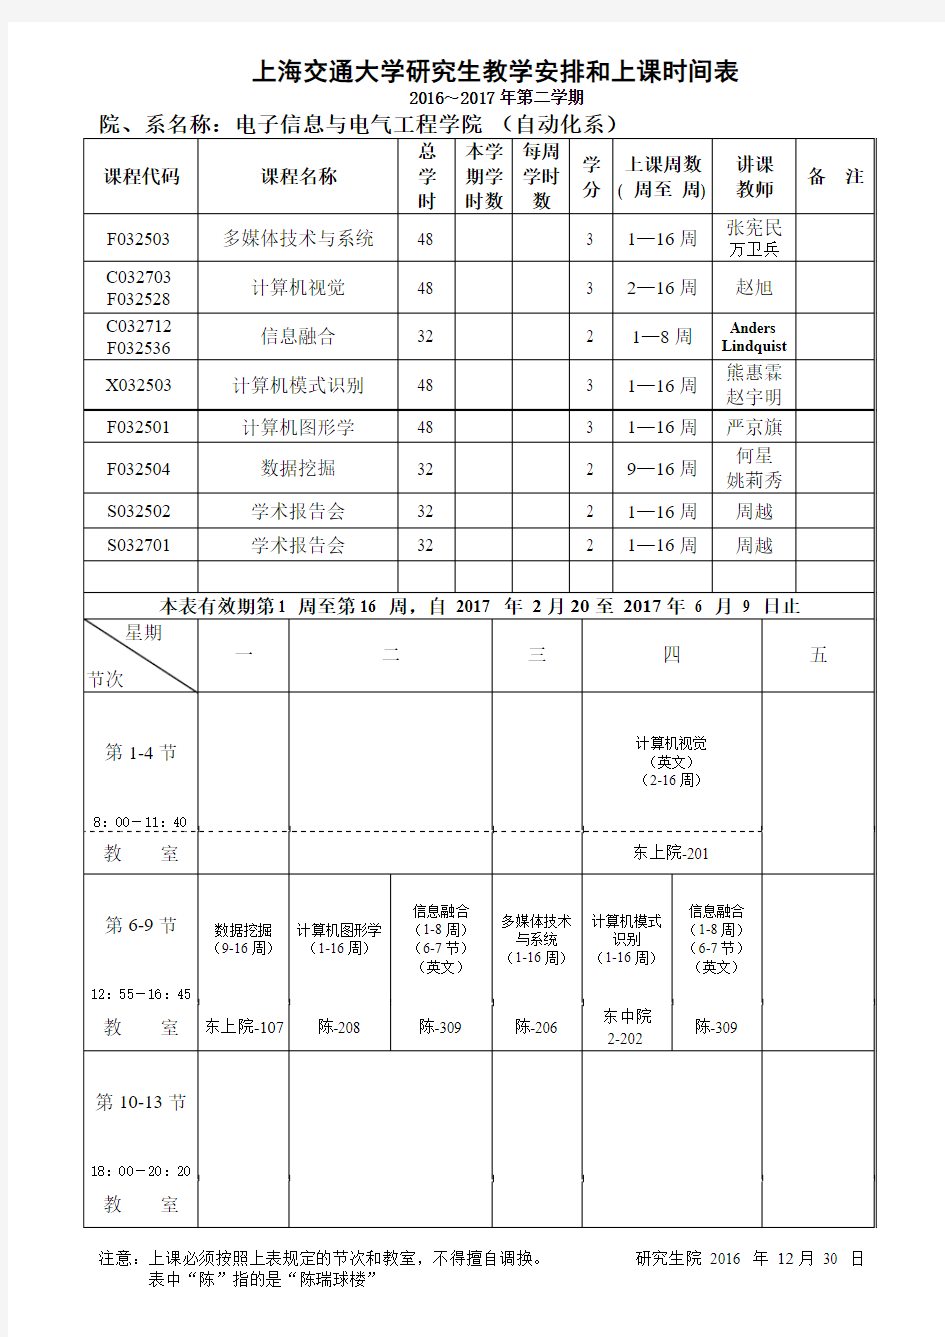 上海交通大学研究生教学安排和上课时间表-上海交通大学-电子信息